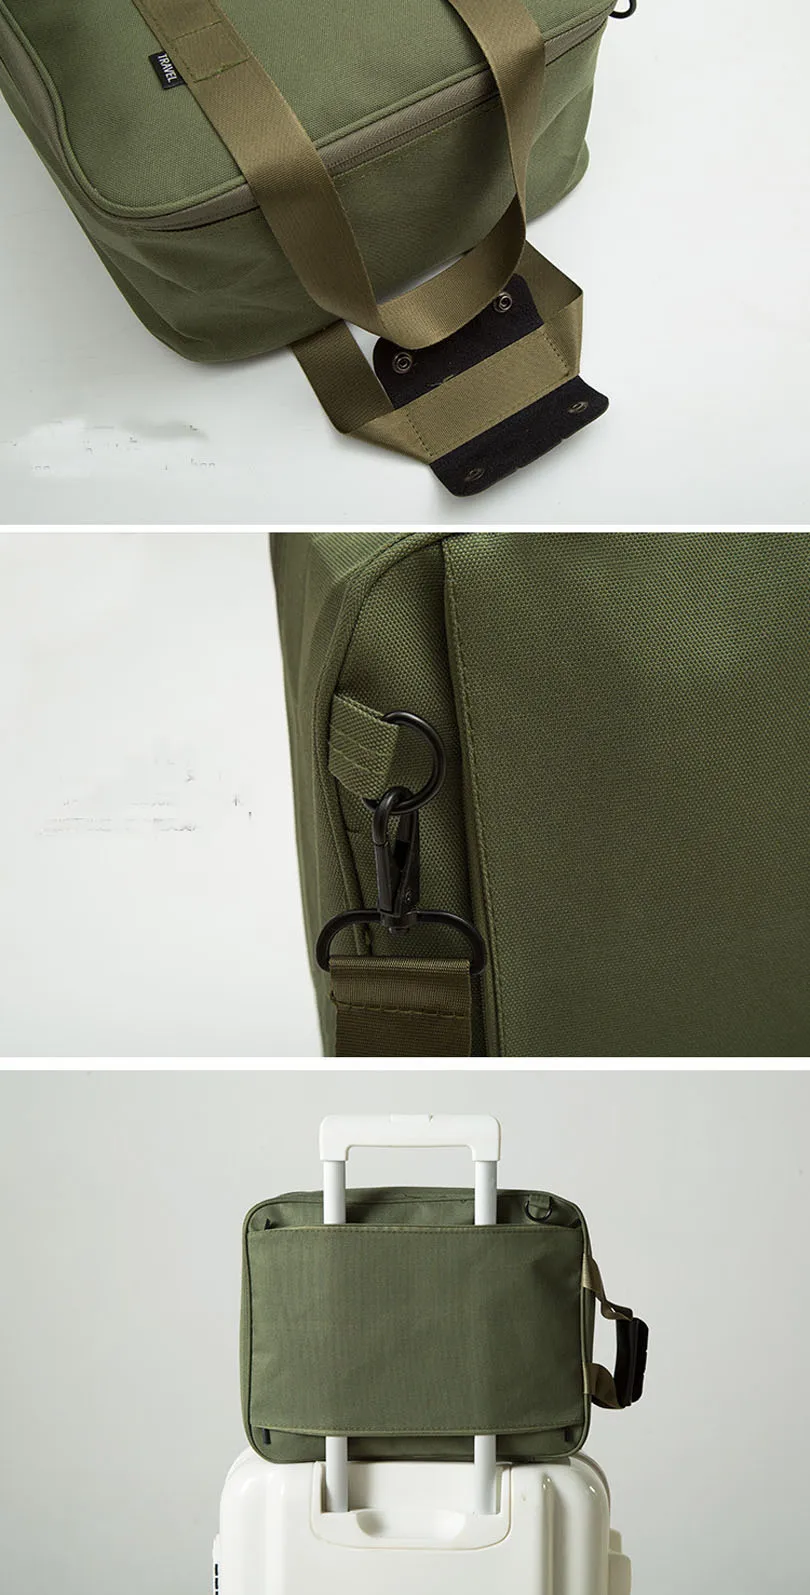 Выходные сумки высокого качества мужской вместительный Canva спортивная для путешествия Сумка самолет поездки носить на багаж сумки ночь Прямая